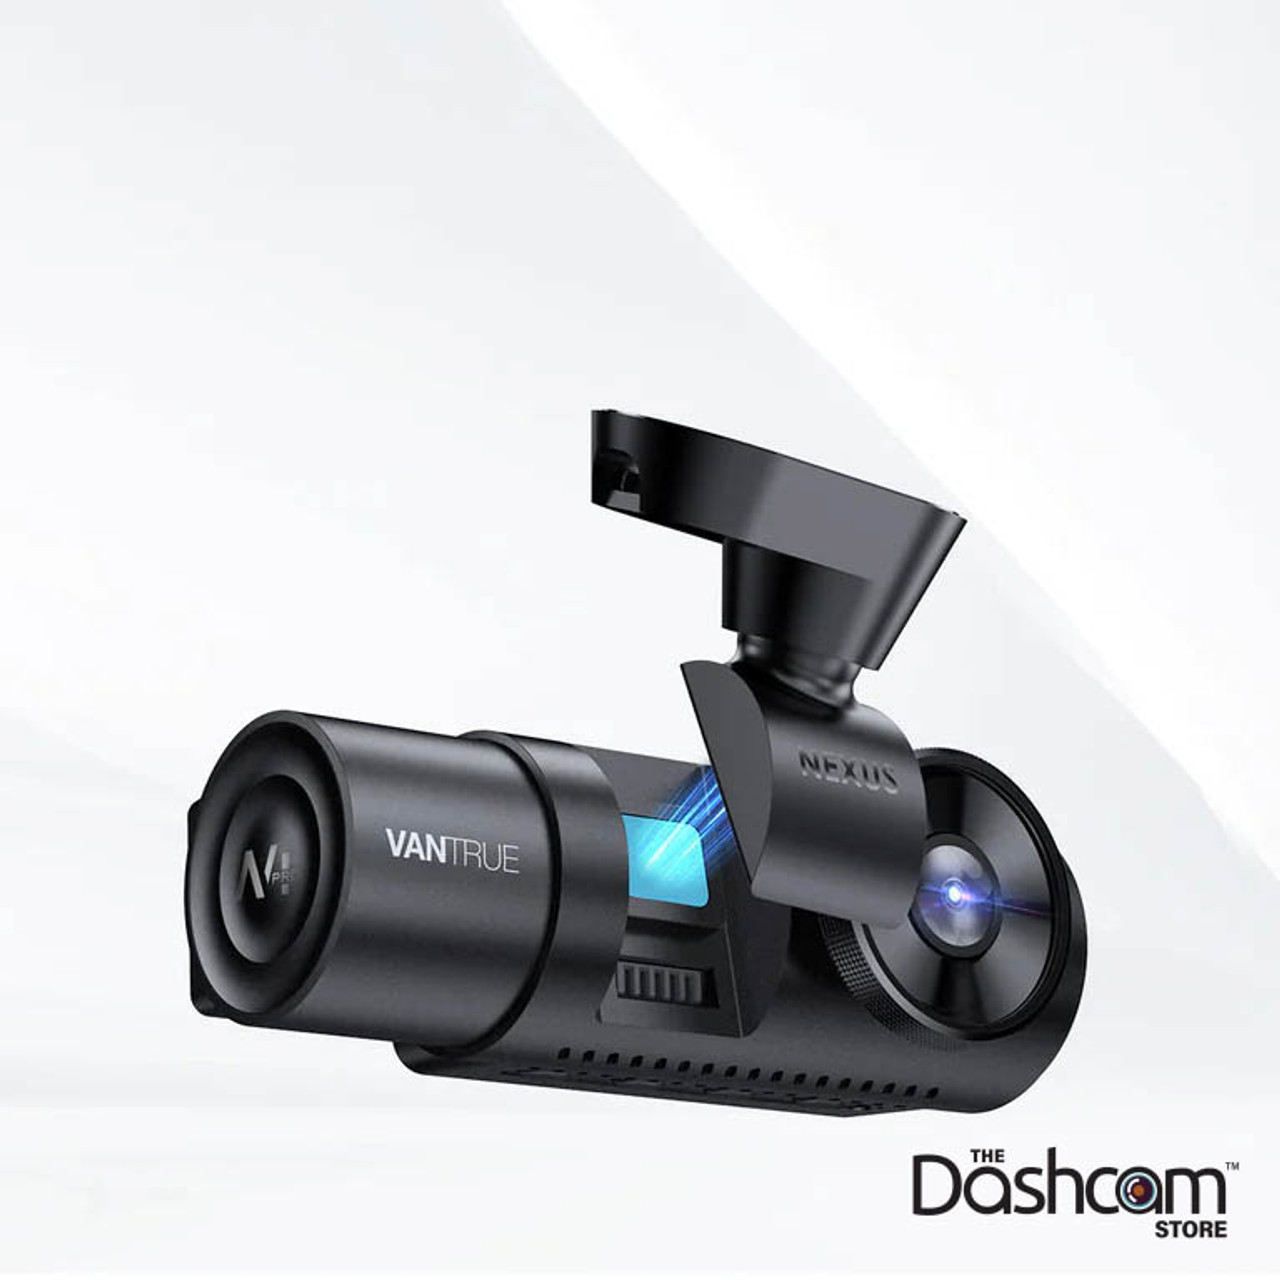 Vantrue N4 Pro 3 Channel 4K Wi-Fi Dash Cam for sale online